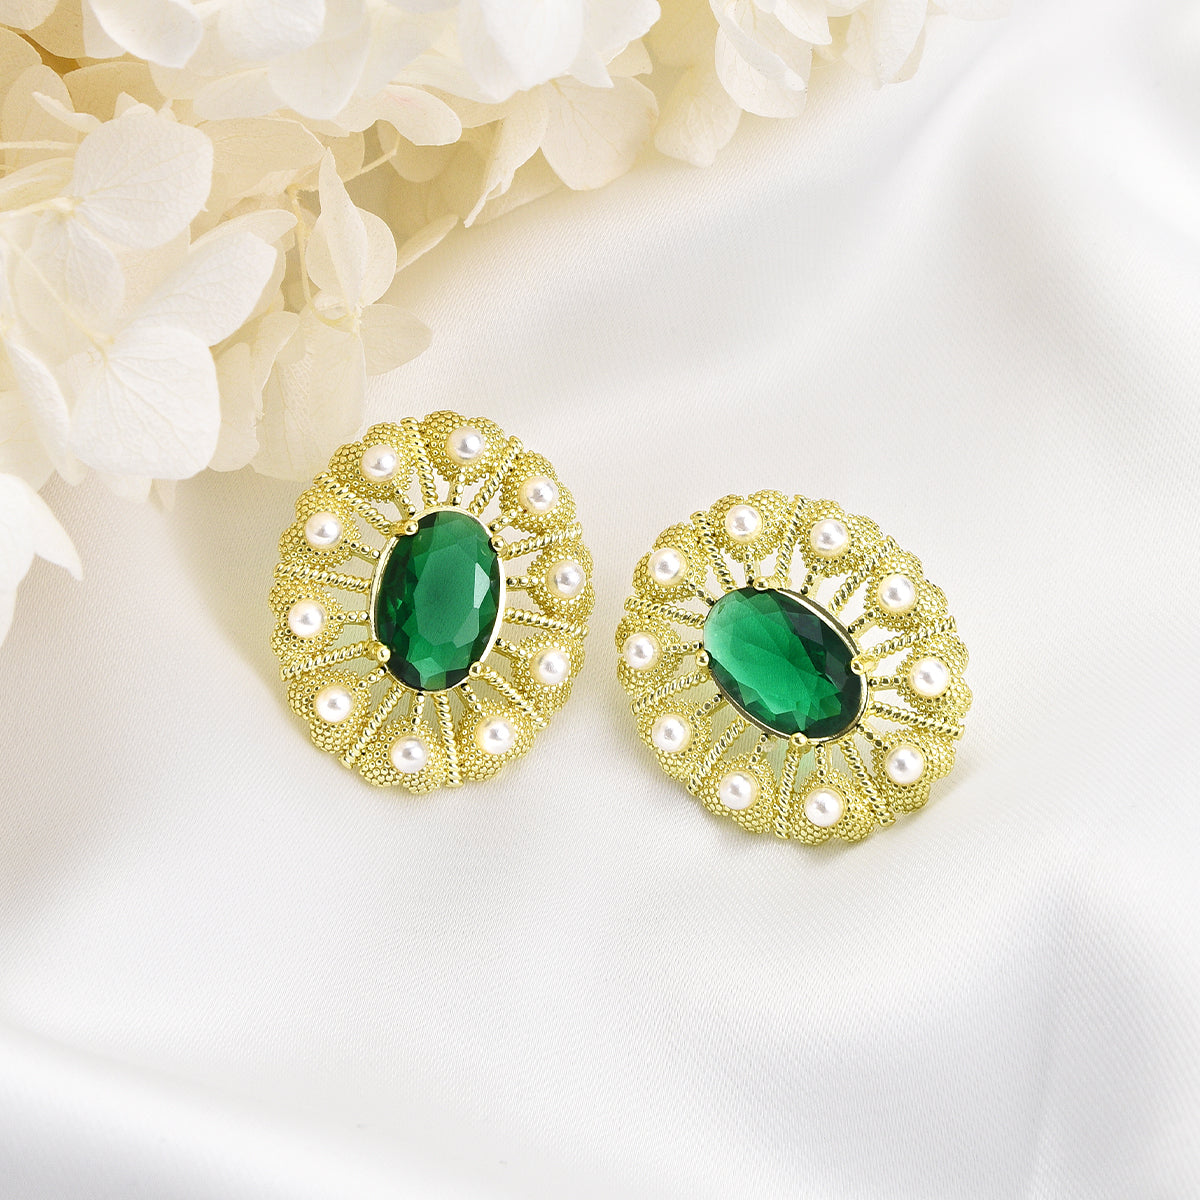 Fancy green peacock design on golden earrings